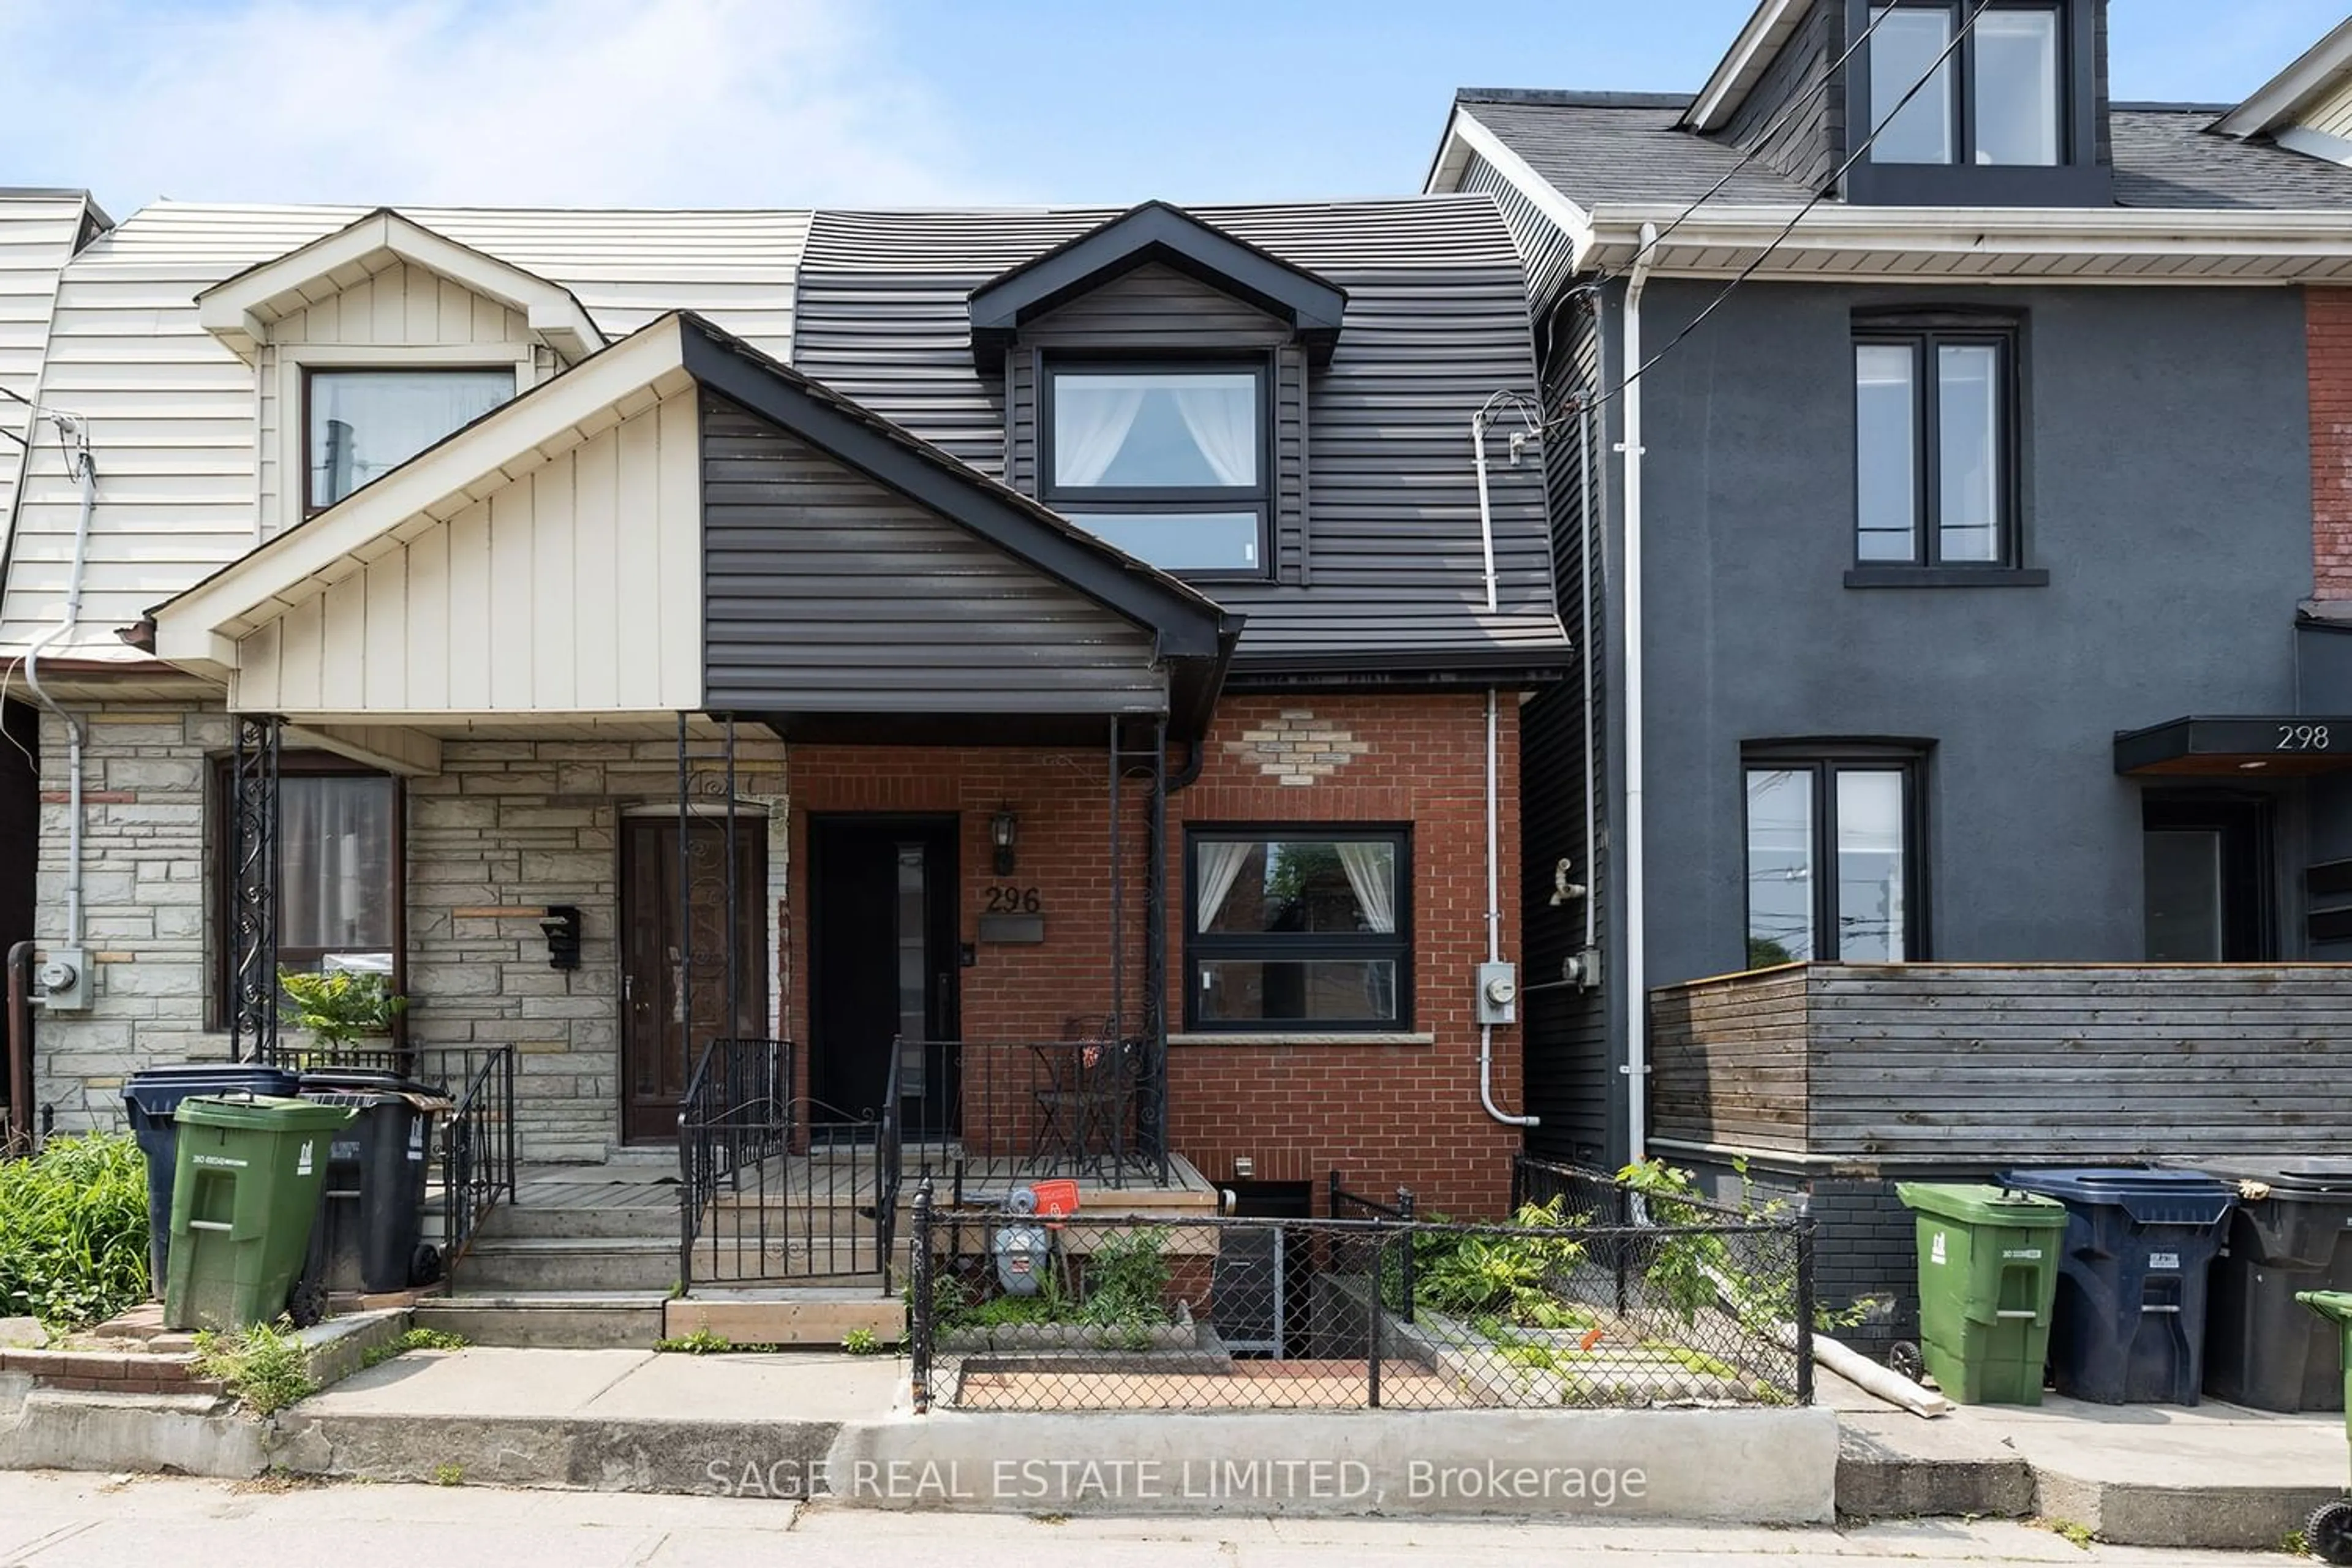 Home with brick exterior material for 296 Ossington Ave, Toronto Ontario M6J 3A3